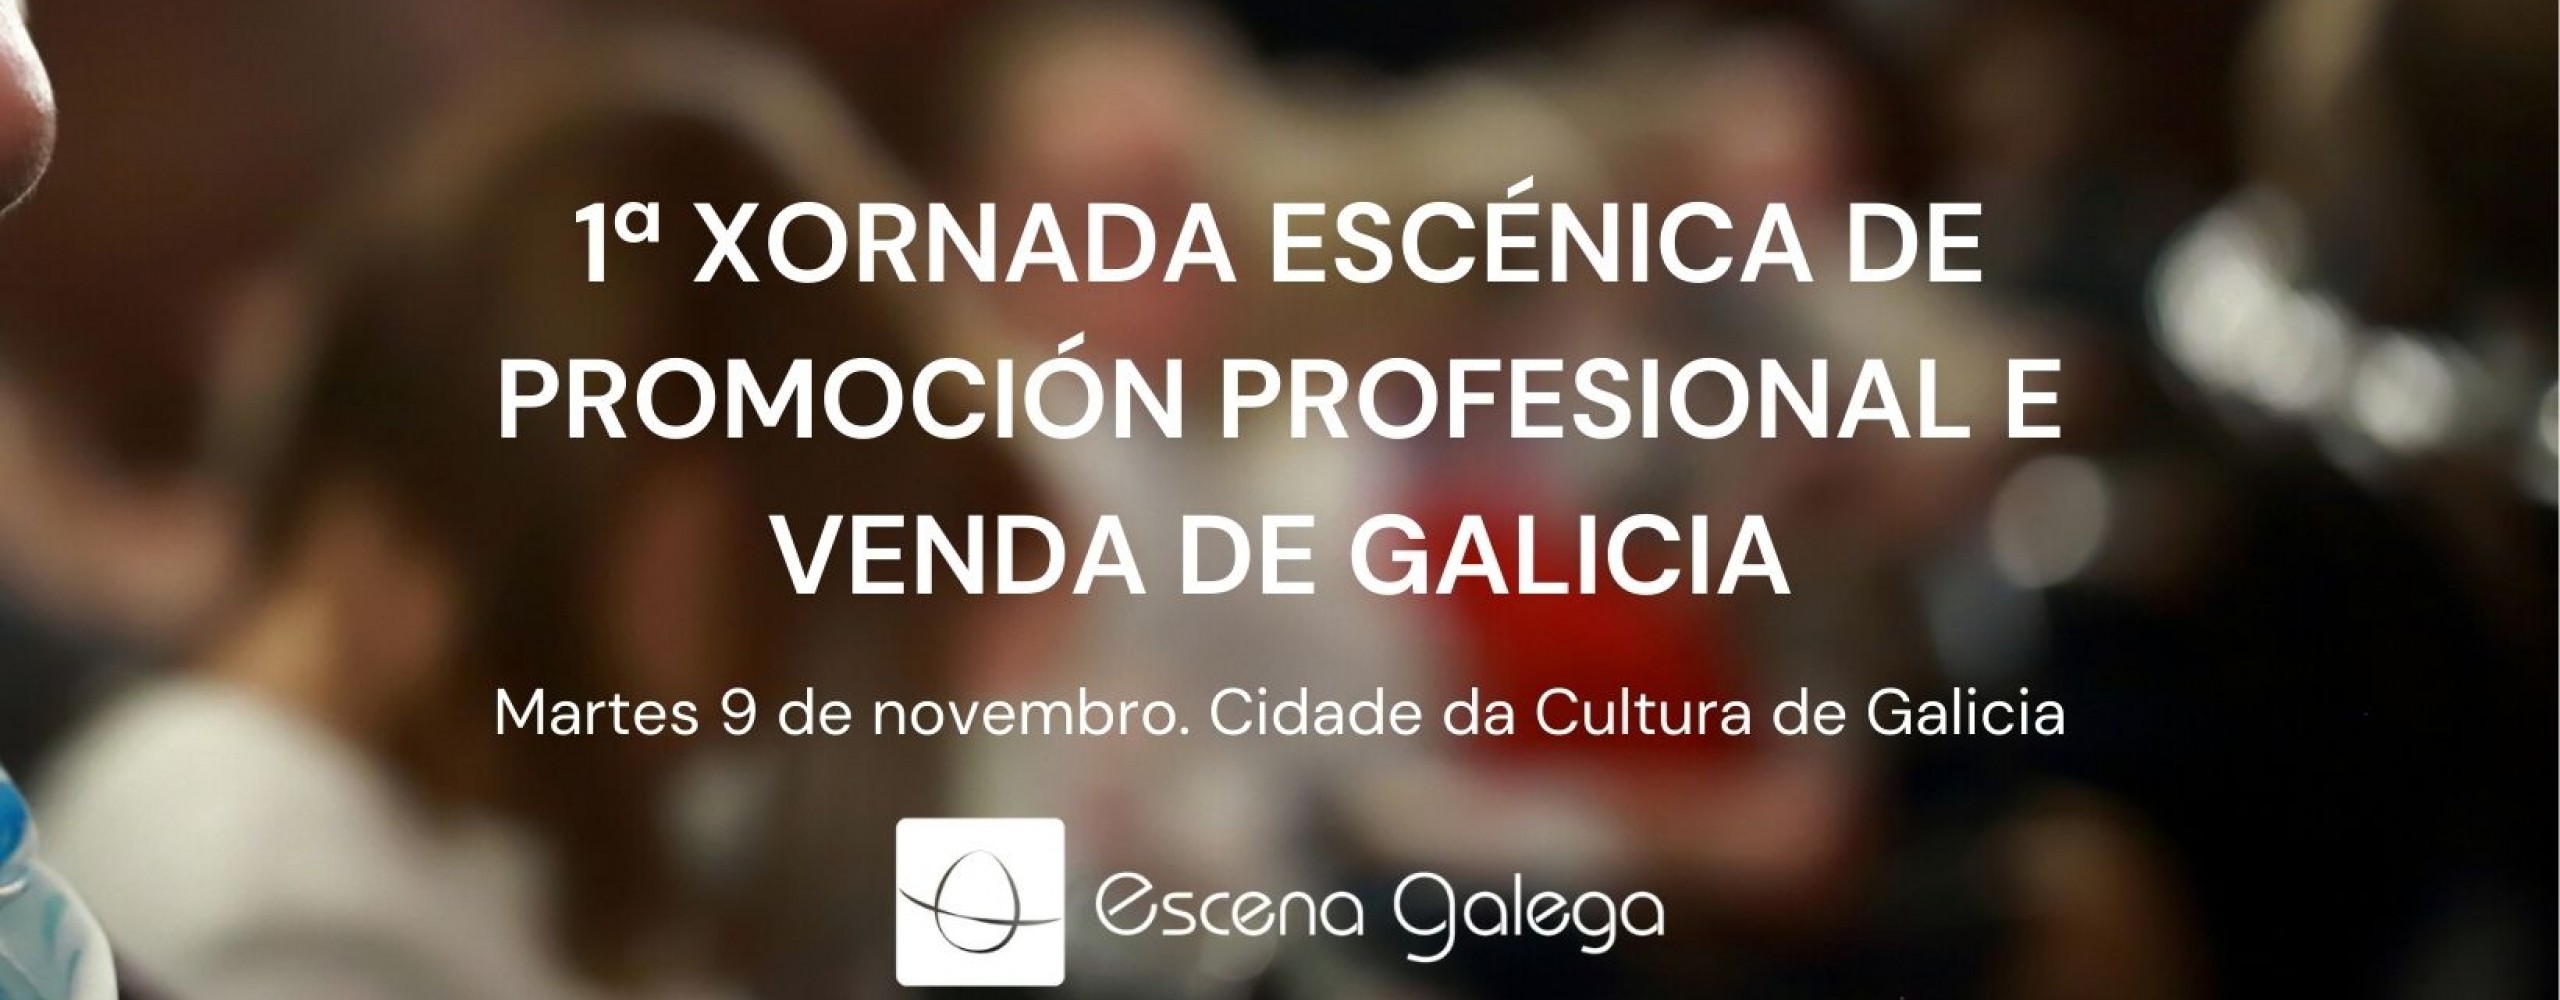 Escena Galega organiza por vez primeira unha xornada de venda e promoción de espectáculos na Cidade da Cultura